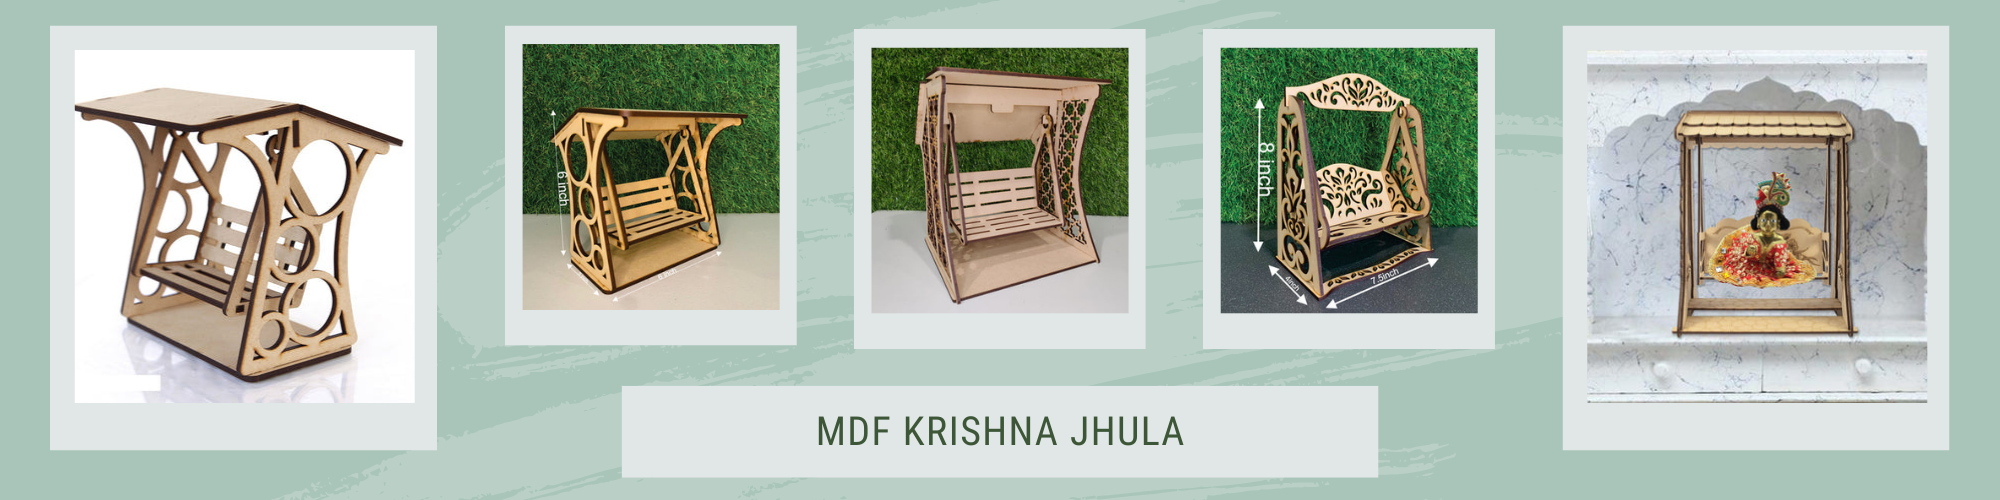 MDF wooden Krishna Jhula online